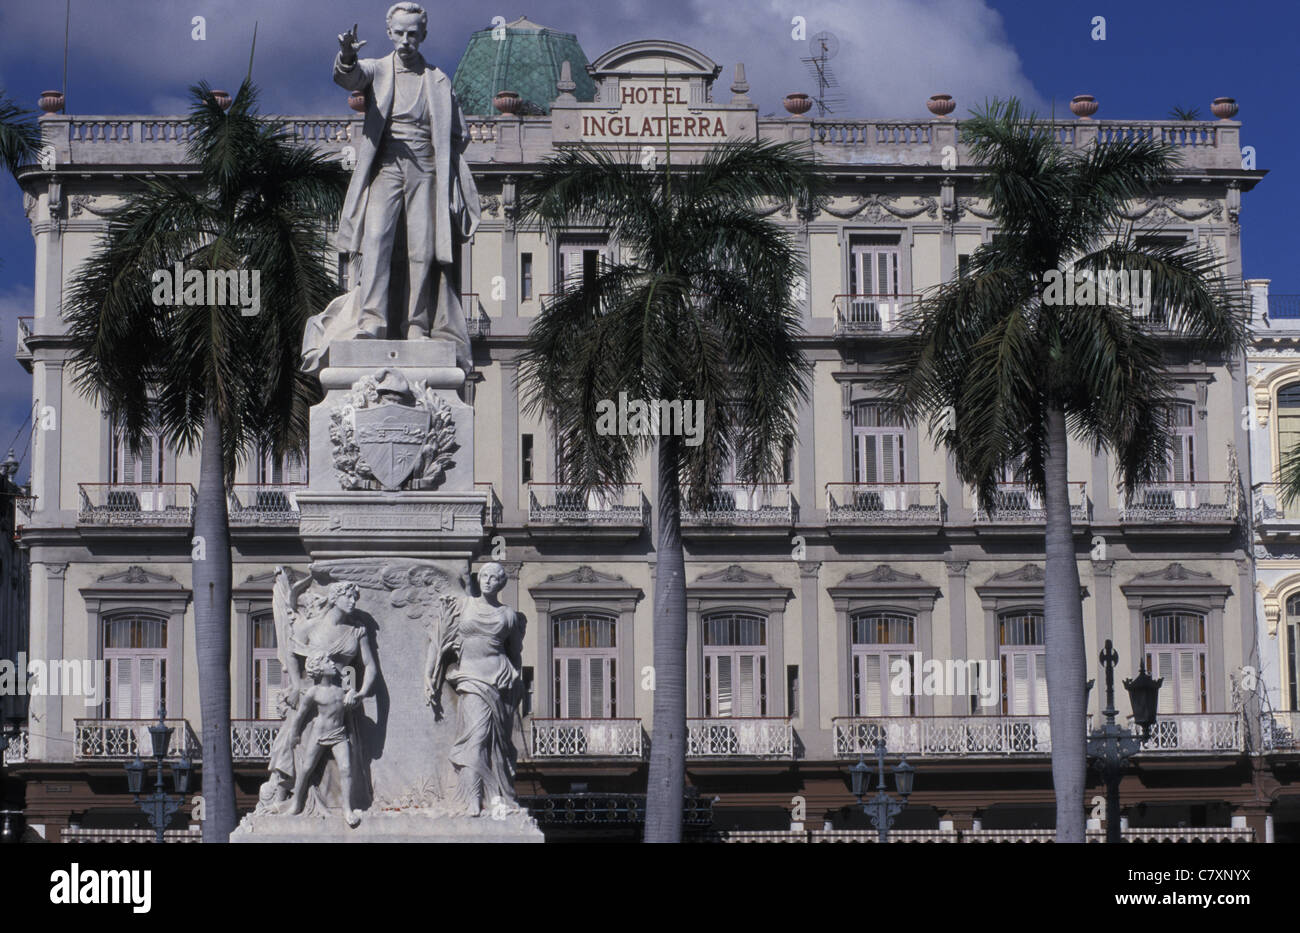 Cuba, Havana: Hotel Inglaterra at Plaza Marti Stock Photo